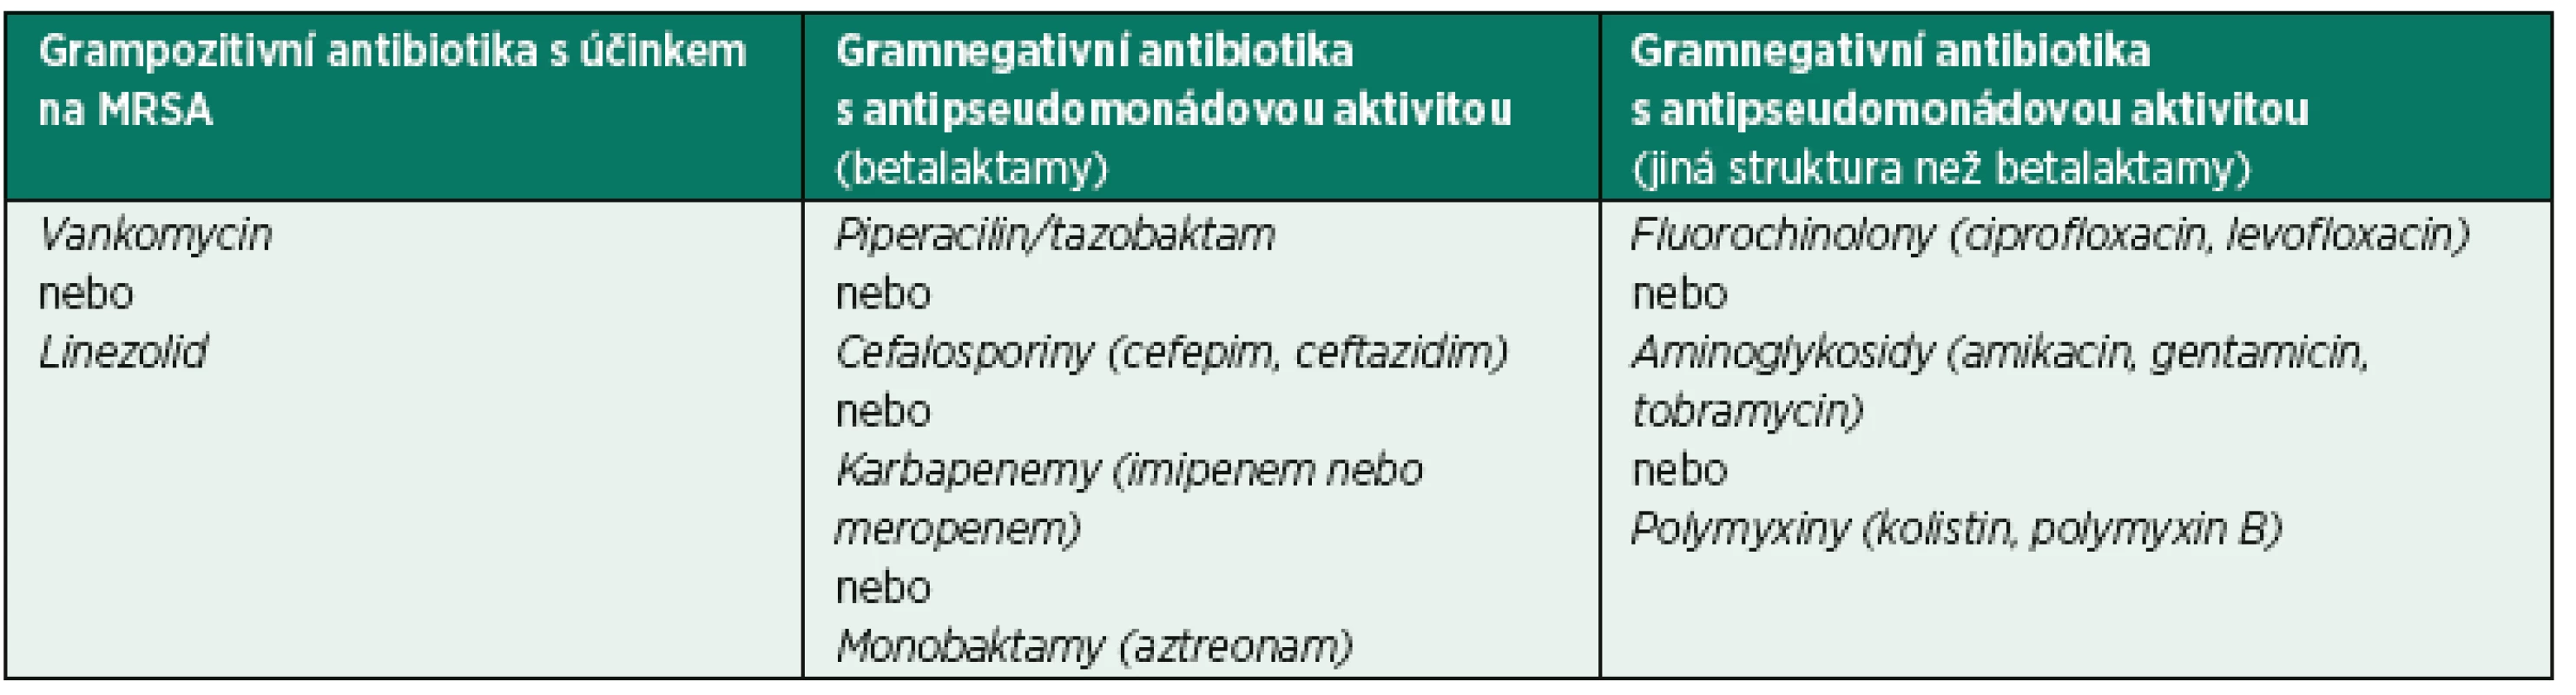 Přehled možností empirické antibiotické terapie u pacientů s klinickým podezřením na VAP na pracovištích, kde je odůvodněné pokrytí MRSA a použití dvojkombinace na pokrytí kmenů Pseudomonas aeruginosa/jiné gramnegativní kmeny